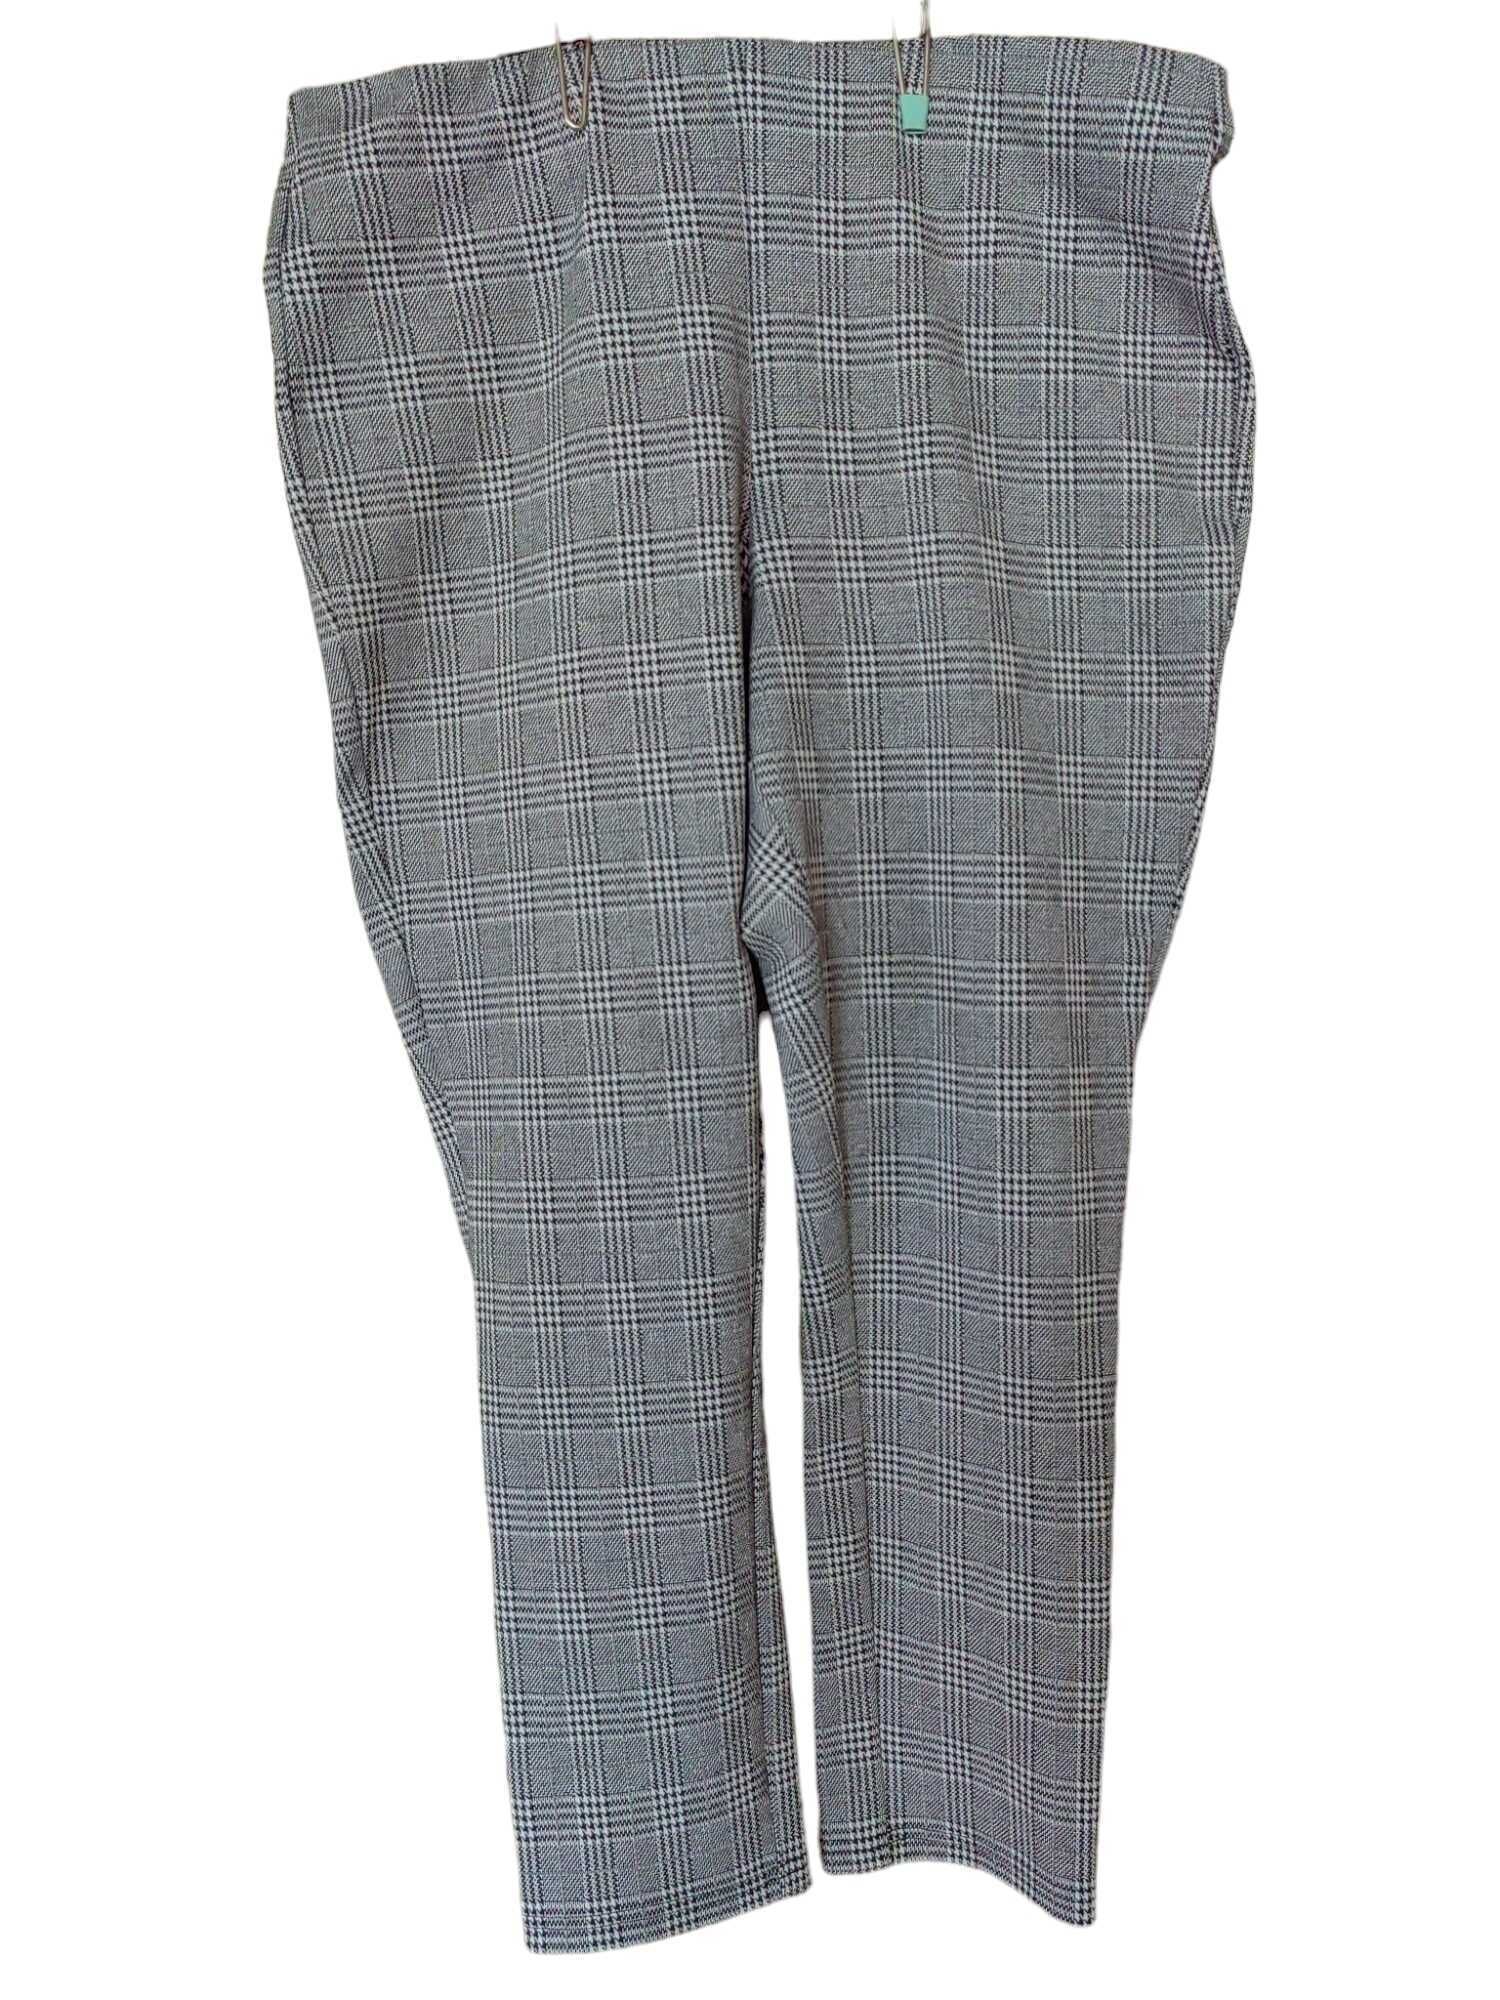 Дамски кариран панталон с цип H&M, 86% полиестер, 13% вискоза, XL